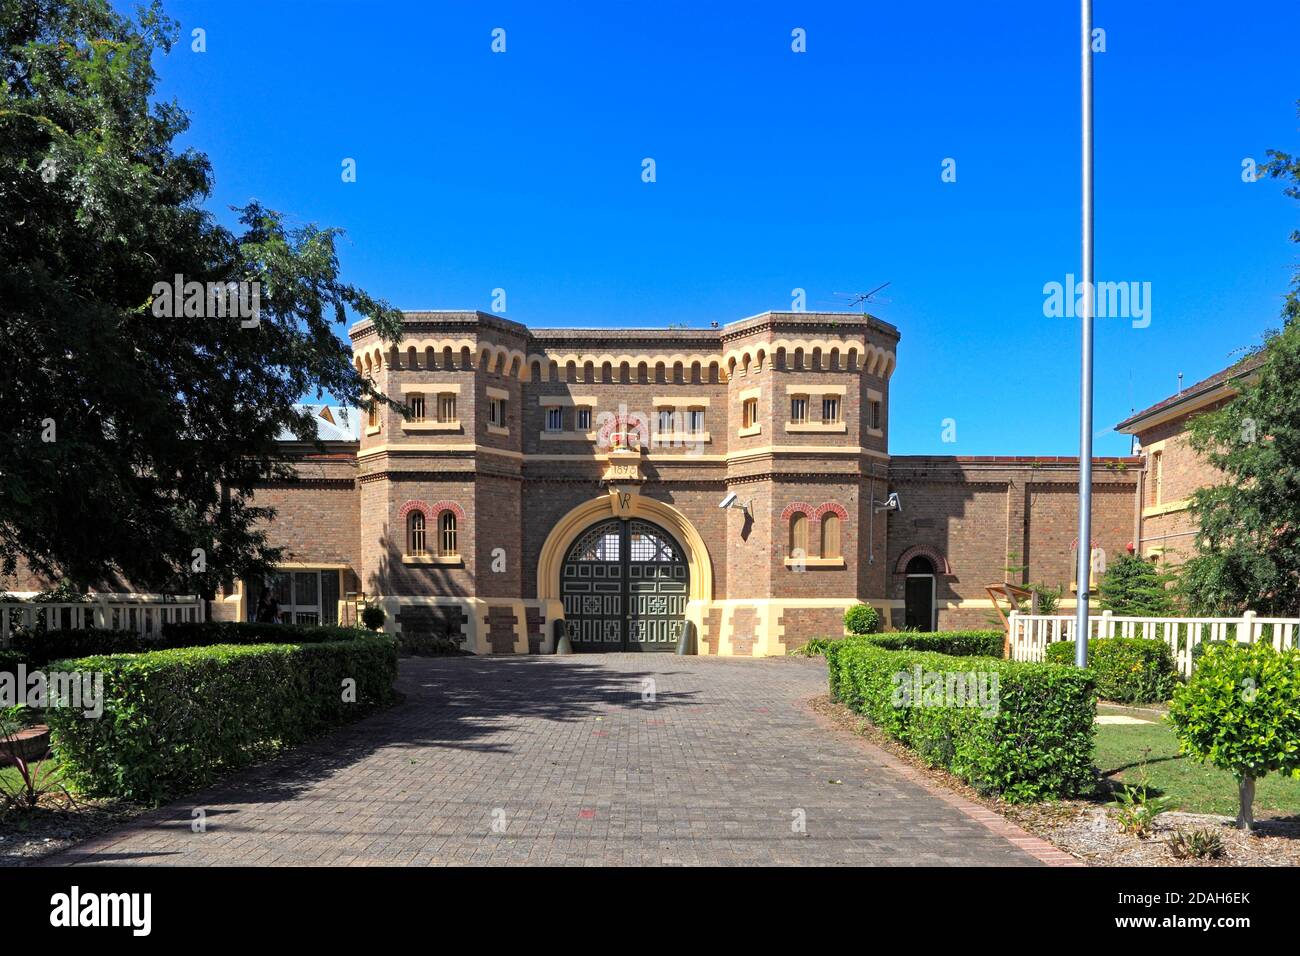 Historisches Grafton Gefängnis, Grafton, NSW, Australien. Auch bekannt als Grafton Correctional Center und Grafton Intake and Transient Center. Stockfoto